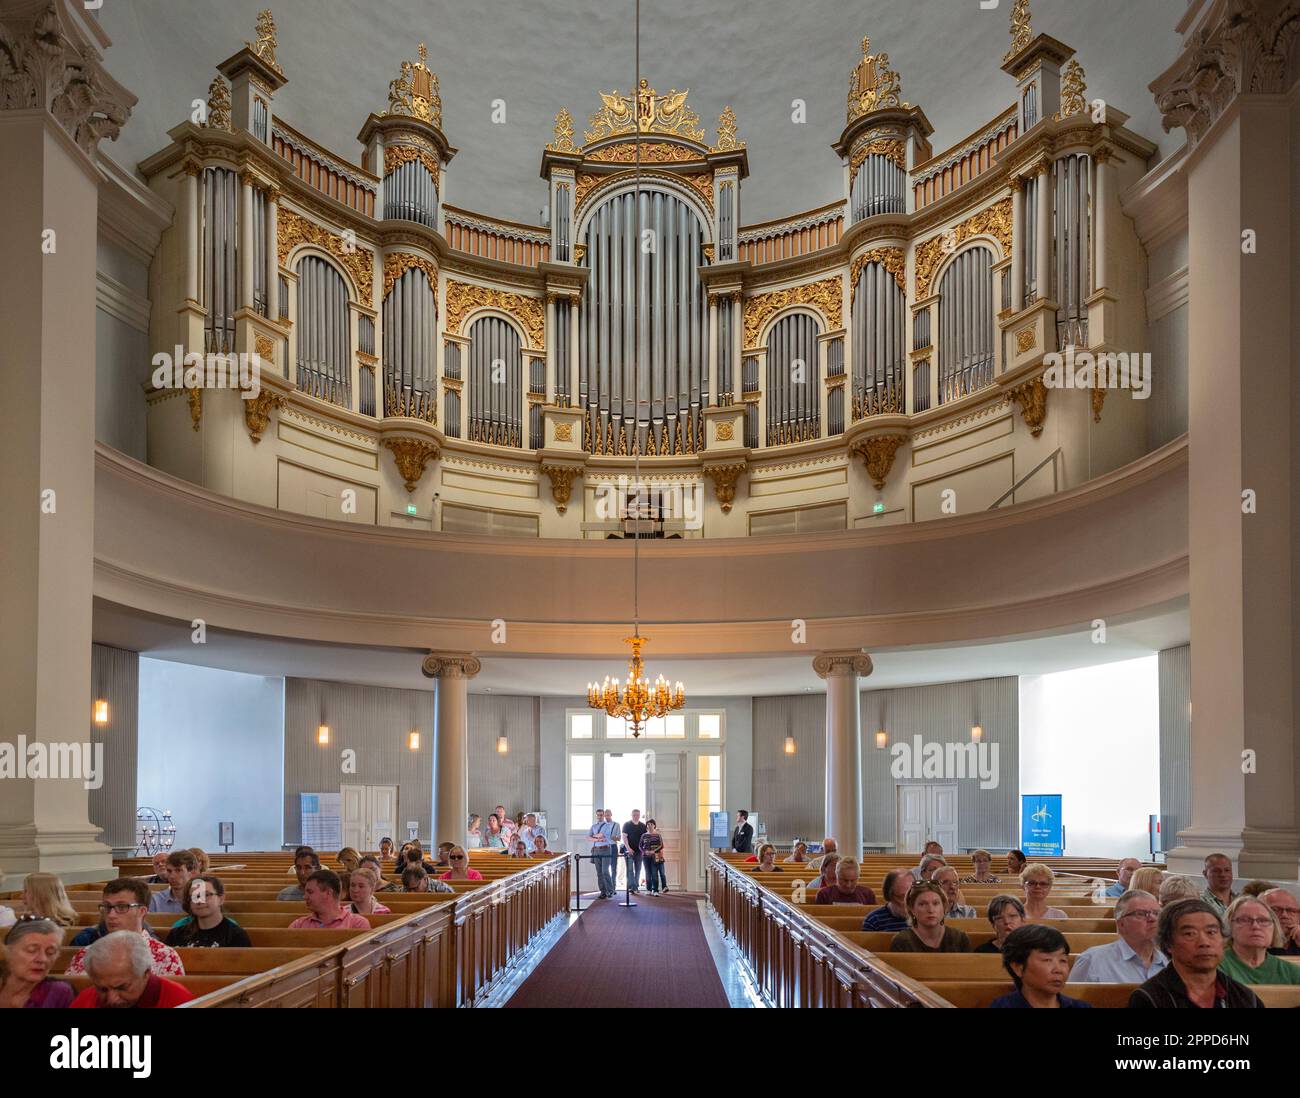 Persone in attesa di un recital per un concerto d'organo nella cattedrale luterana evangelica finlandese della diocesi di Helsinki, Finlandia. Foto Stock